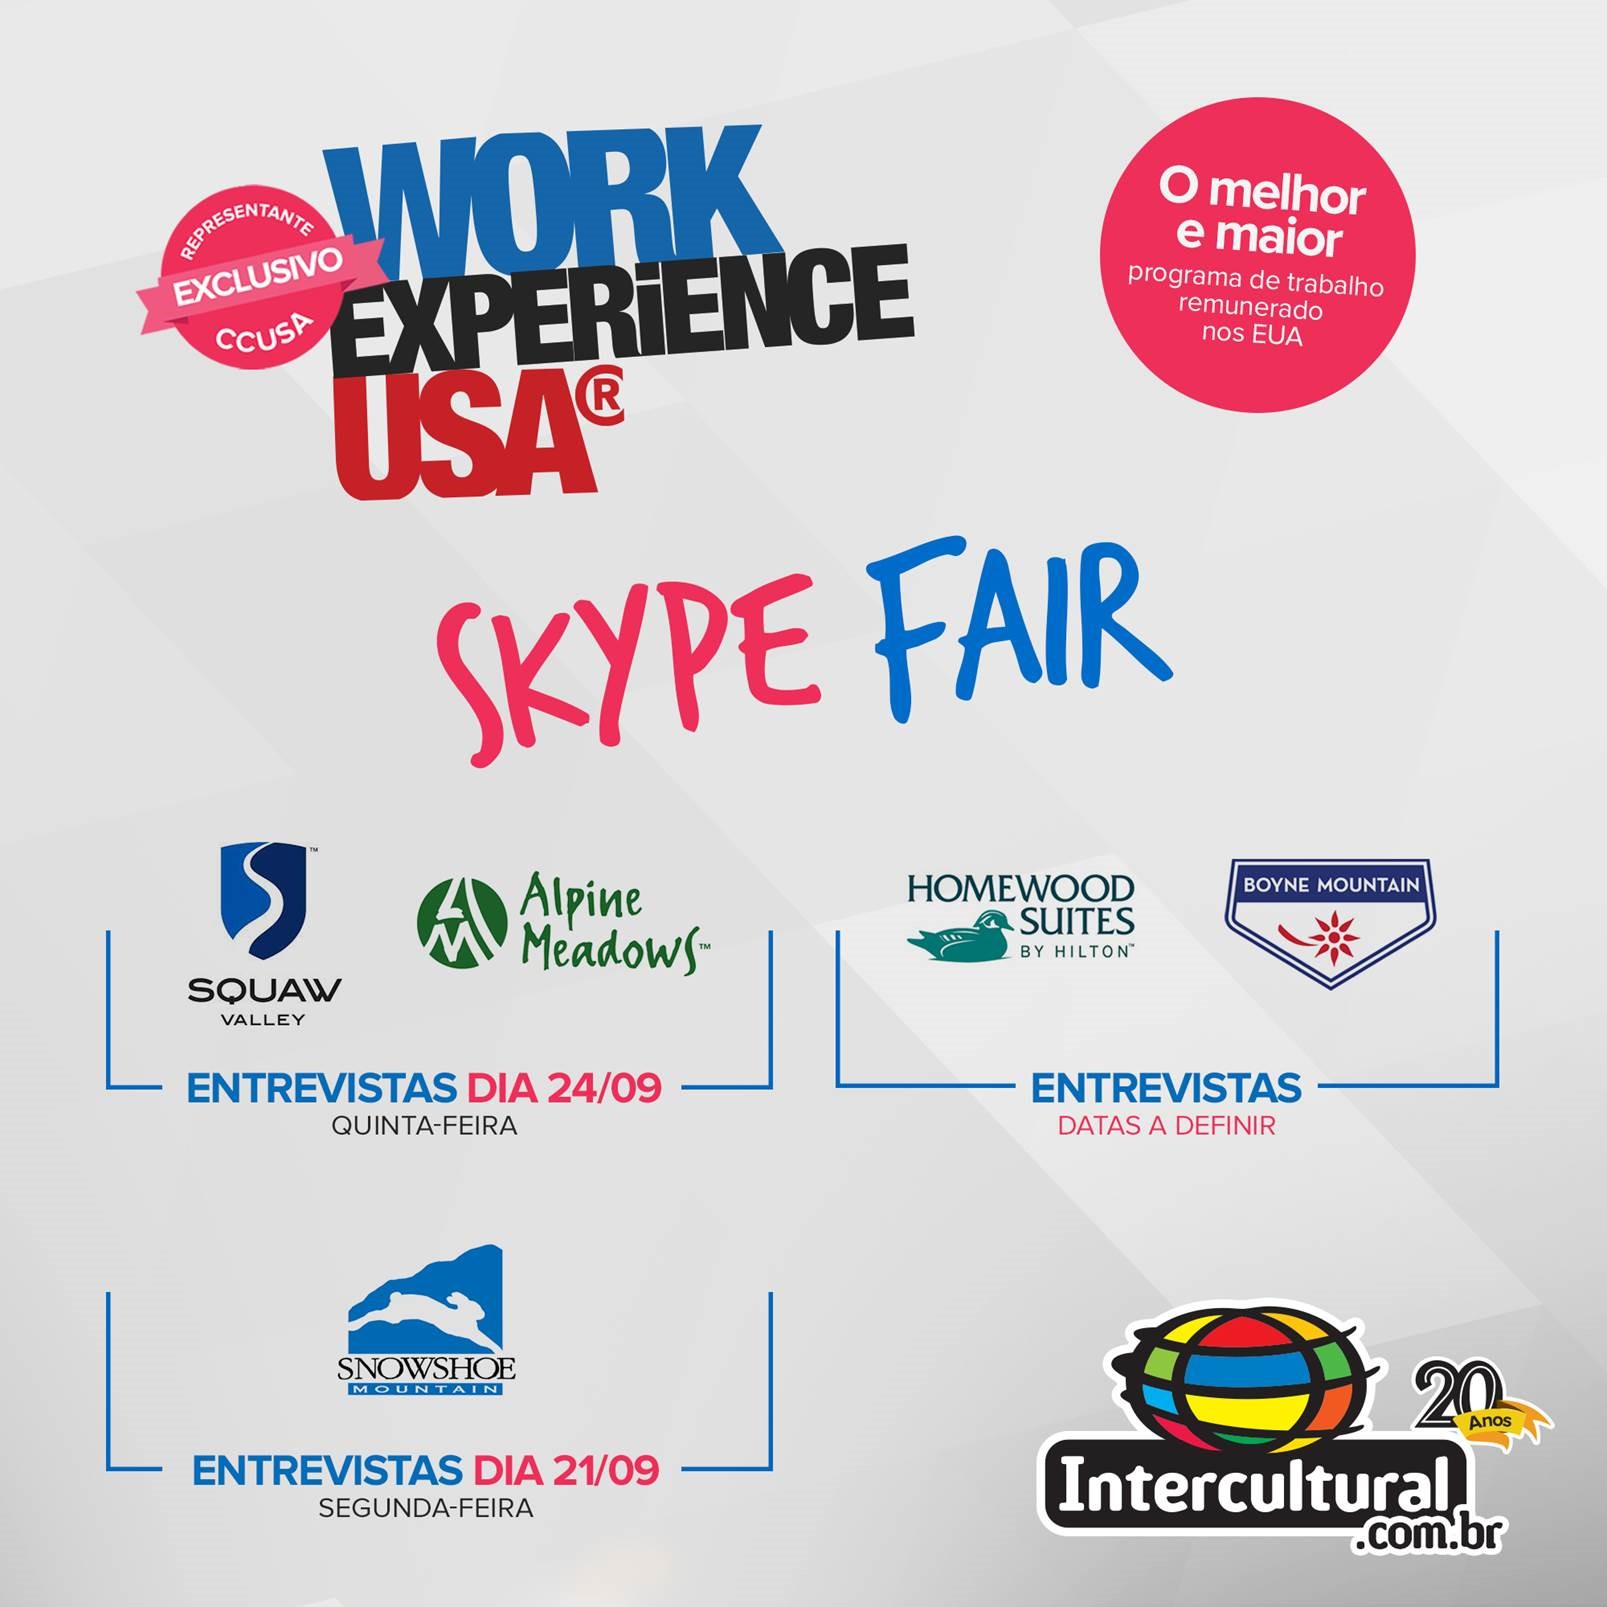 Skype Fair Work Experience USA - 2015